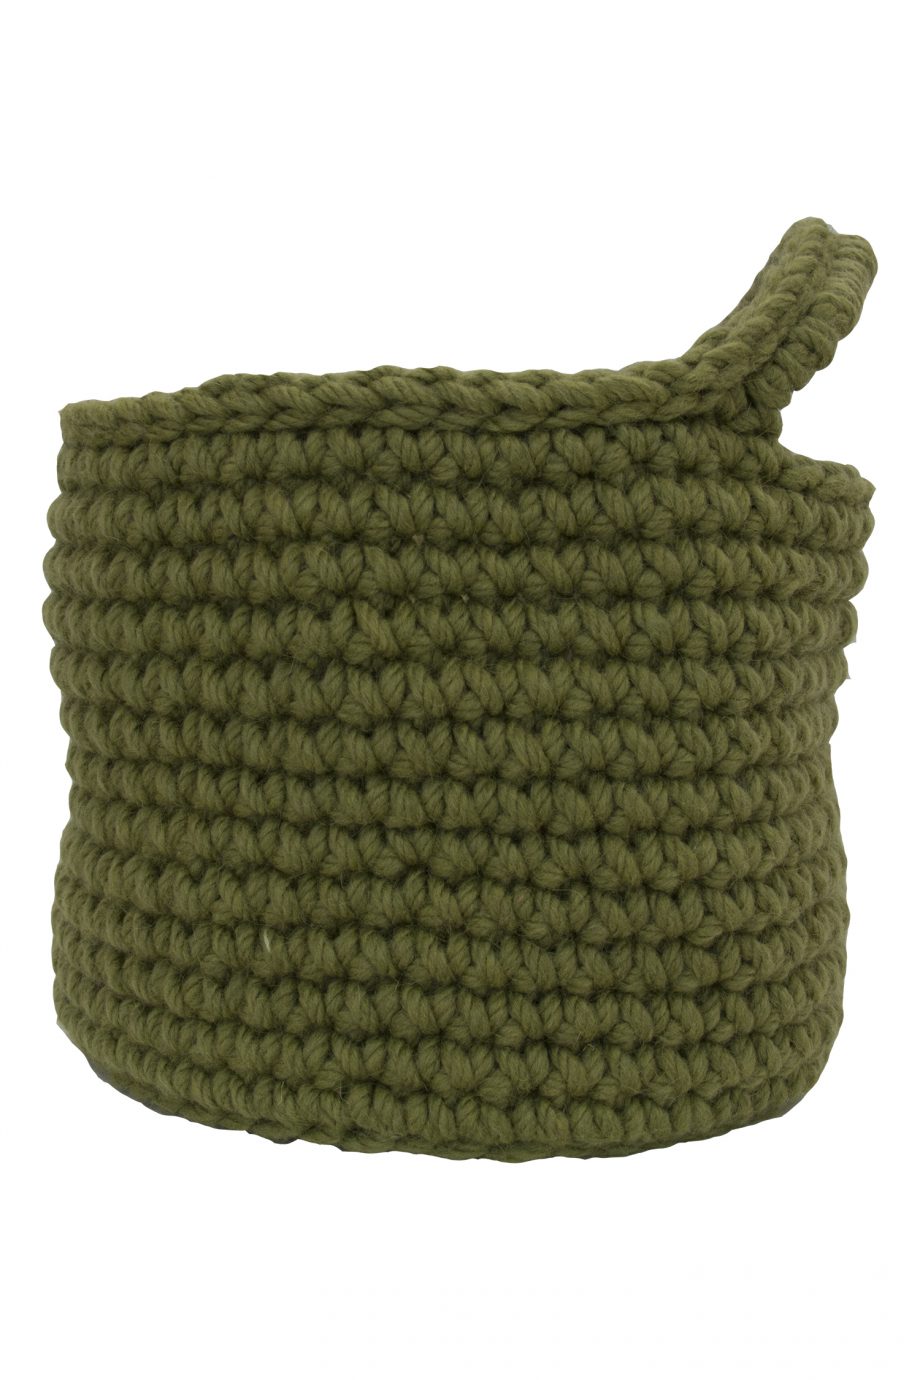 nordic olive green crochet woolen basket